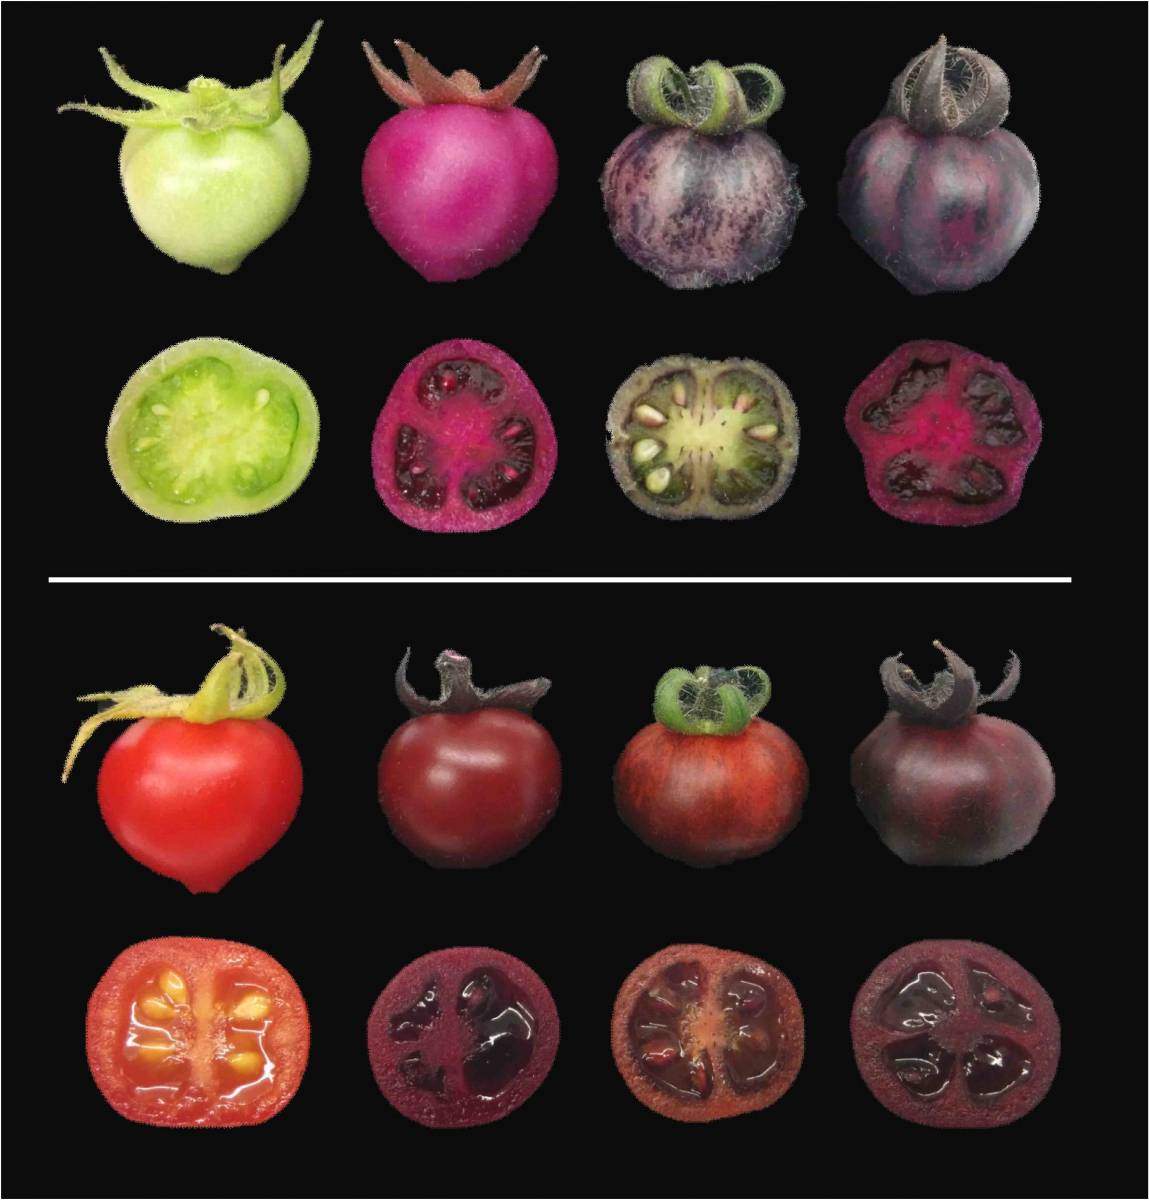 עגבניות בוסר (למעלה) ובשלות (למטה). צבען של עגבניות רגילות (משמאל) הופך מירוק לאדום כאשר הן מבשילות. העגבניות המהונדסות, לעומת זאת, צבועות בגוונים שונים של אדום-סגול כאשר הן מייצרות בטלאינים (שני משמאל), פיגמנטים אחרים הקרויים אנתוציאנינים (שני מימין), או שני סוגי פיגמנטים אלה יחד (מימין)